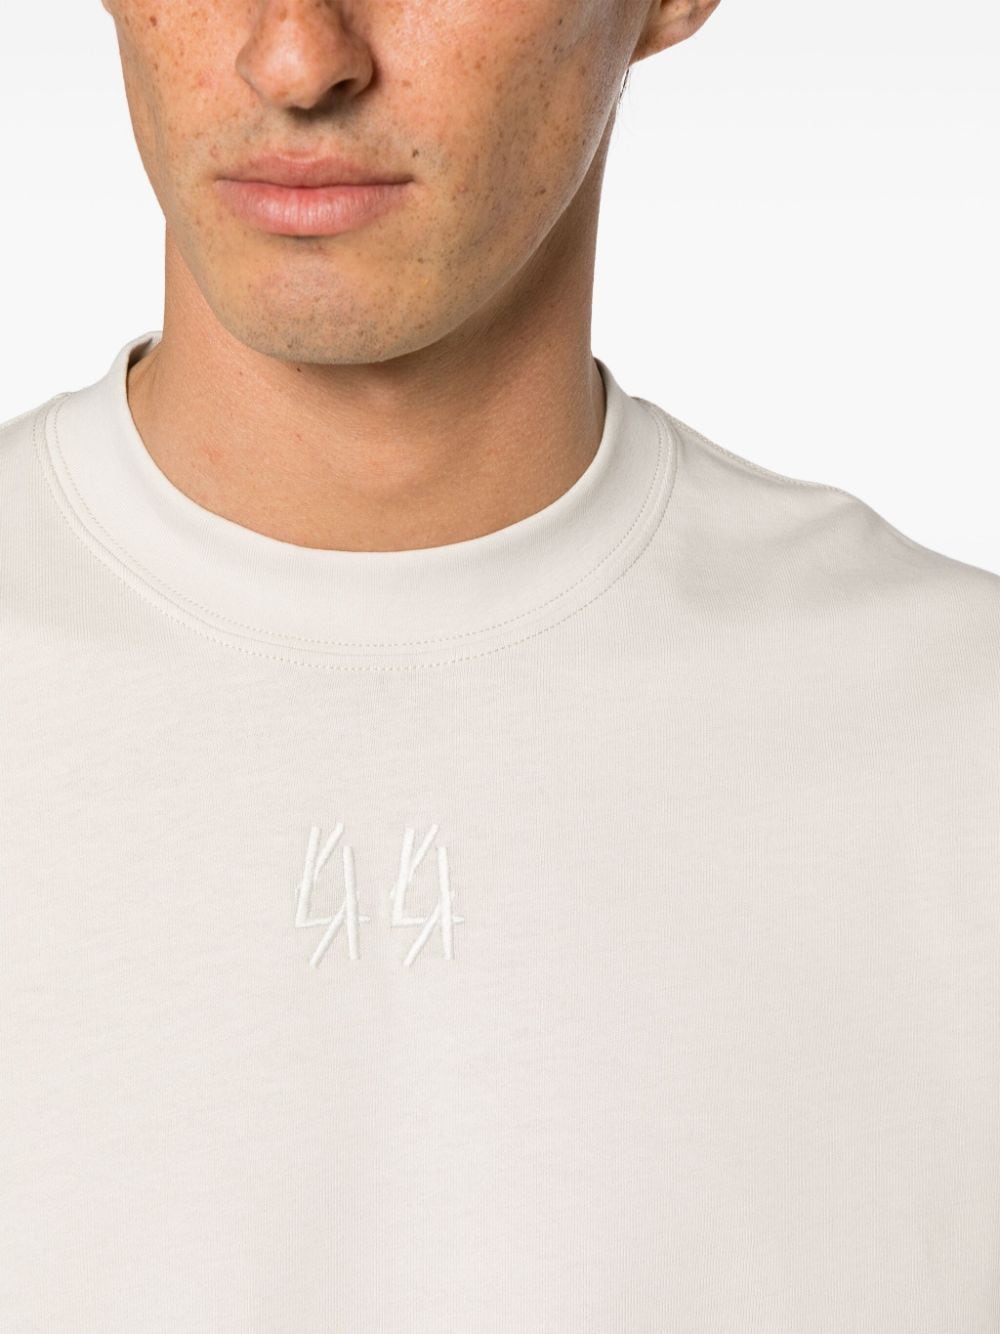 44 LABEL GROUP 44 LABEL GROUP- Cotton T-shirt